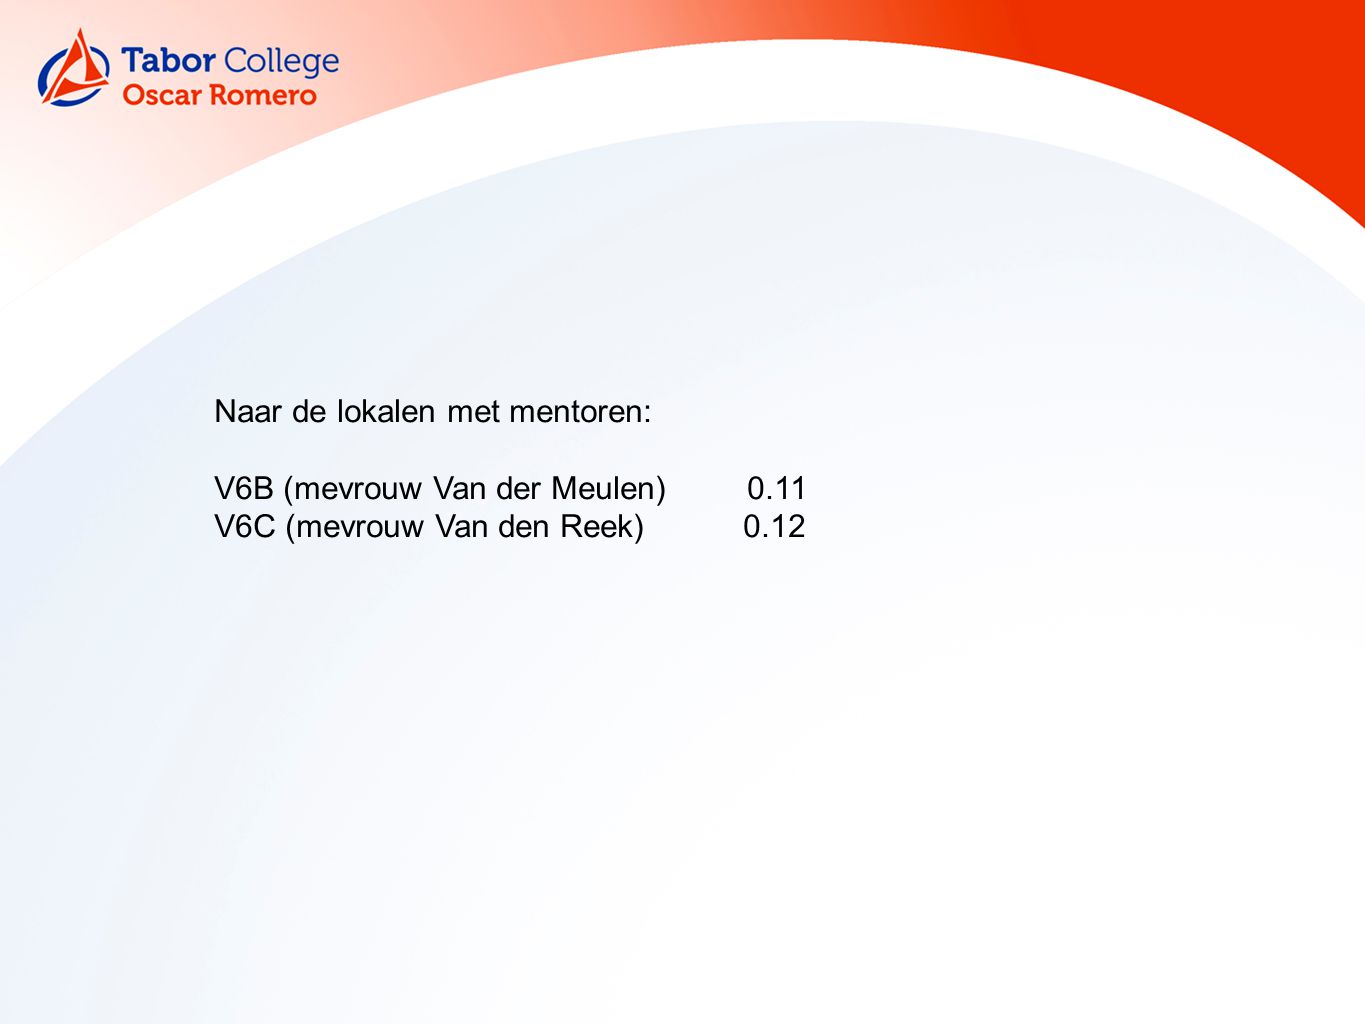 Naar de lokalen met mentoren: V6B (mevrouw Van der Meulen) 0.11 V6C (mevrouw Van den Reek) 0.12